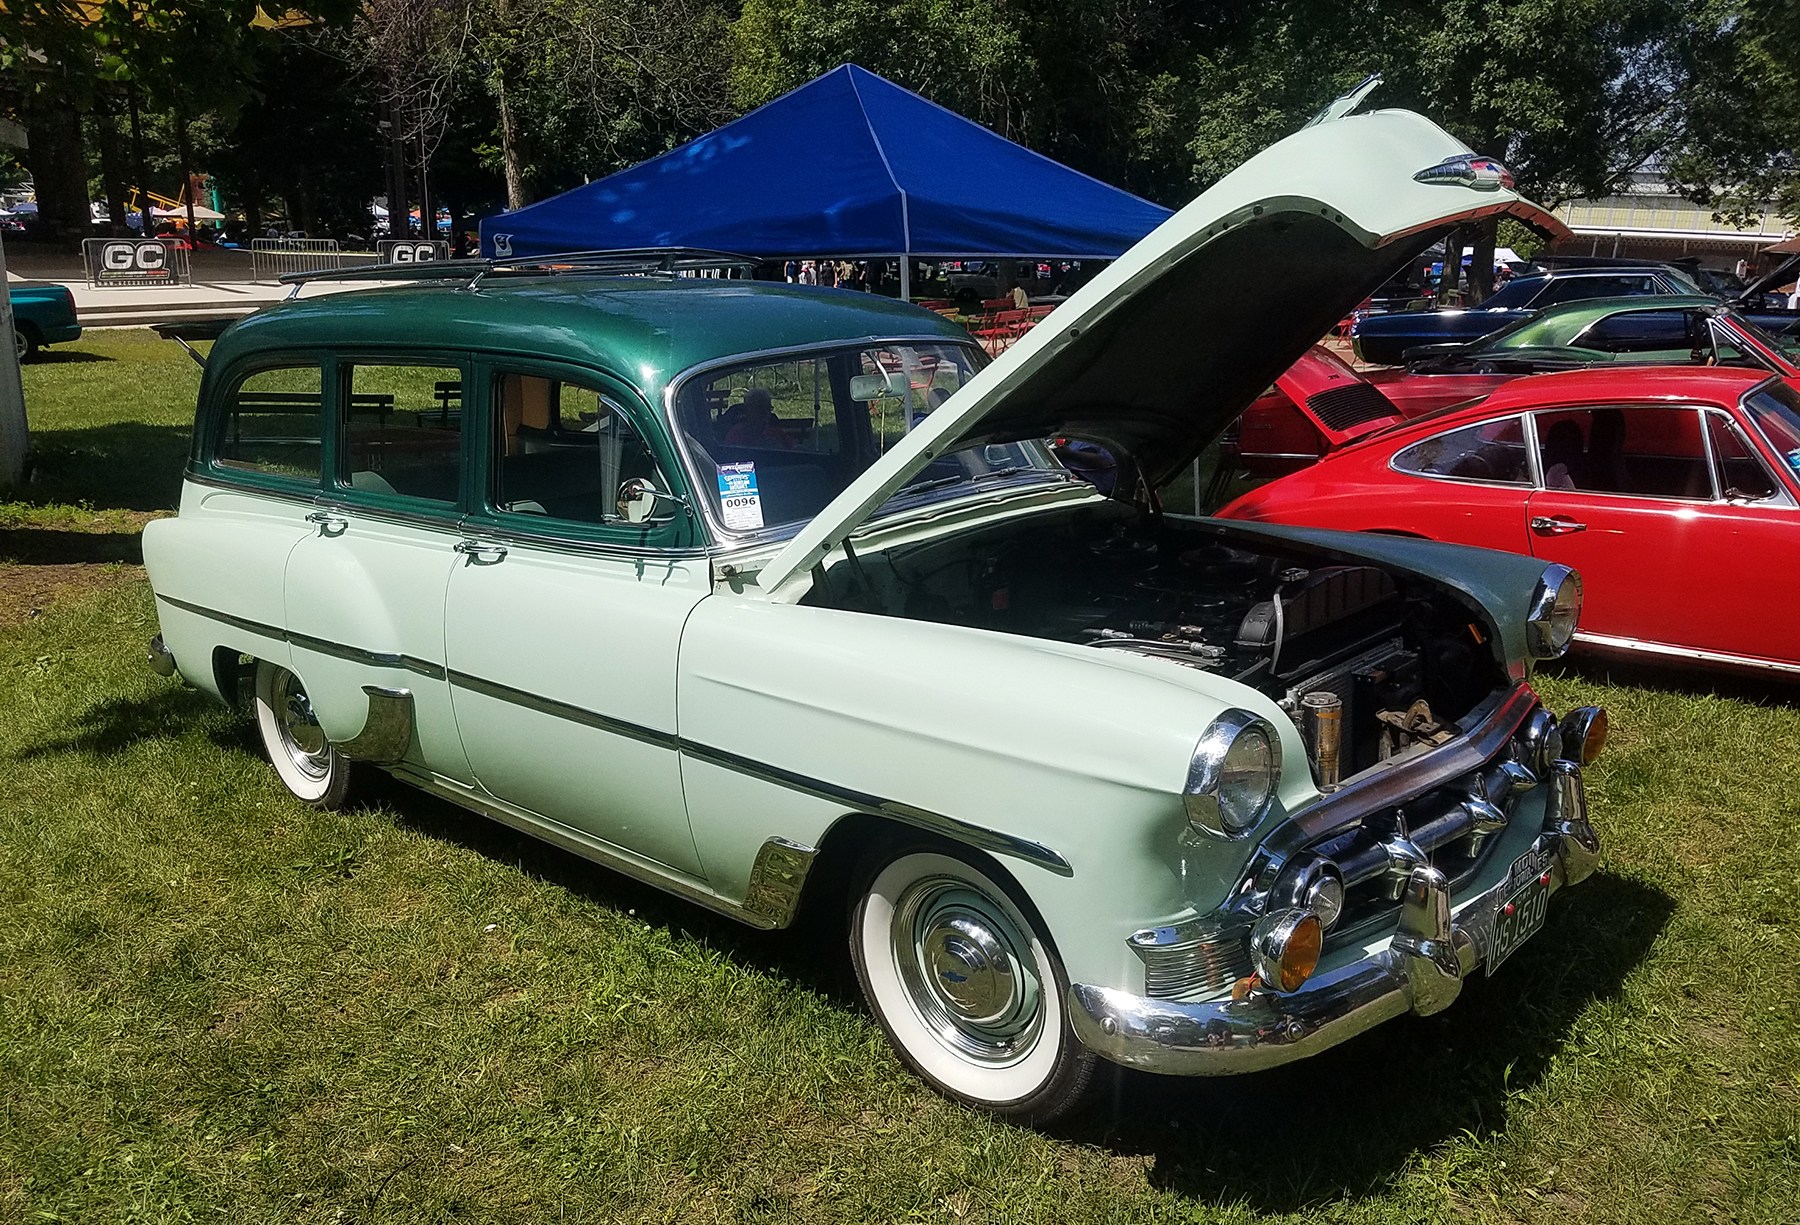 1953 Chevrolet station wagon